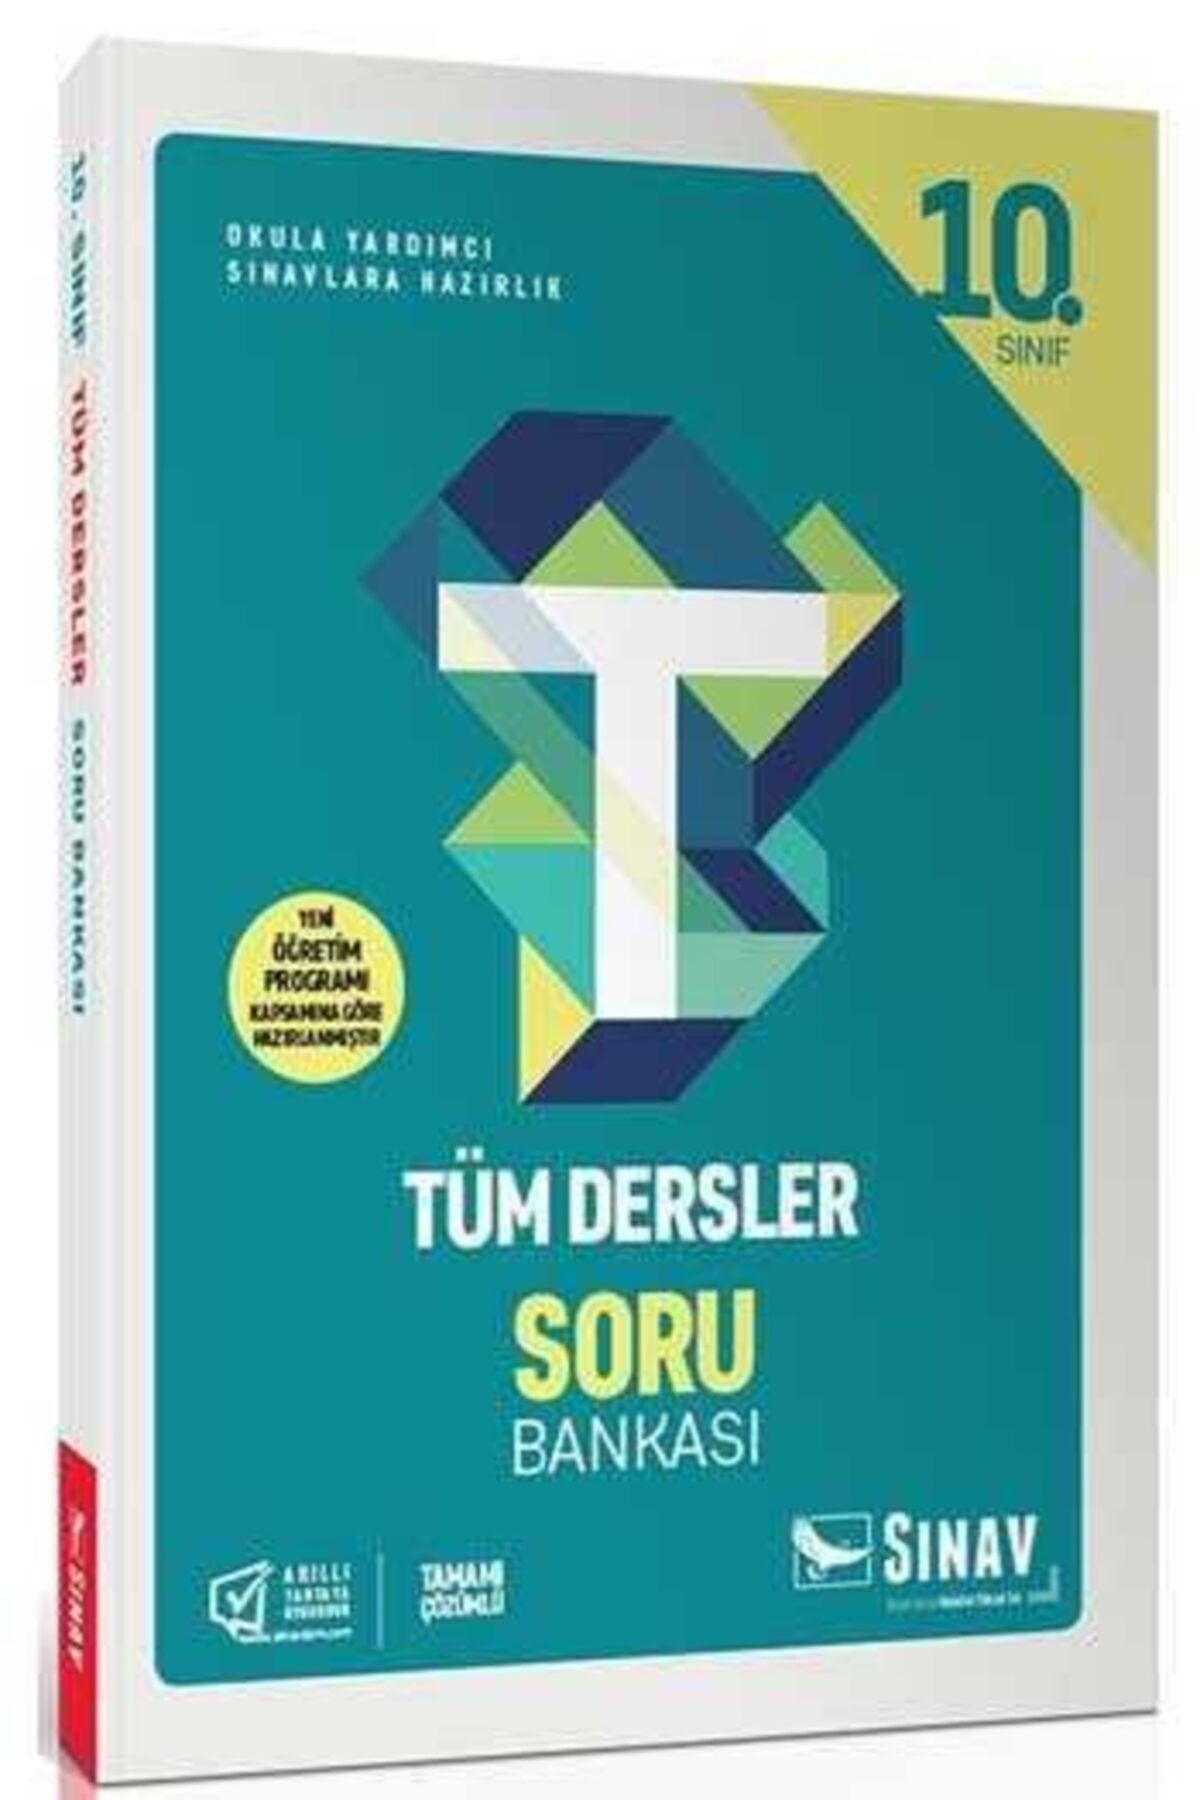 Sınav Yayınları Sınav Yayınları 10. Sınıf Tüm Dersler Soru Bankası